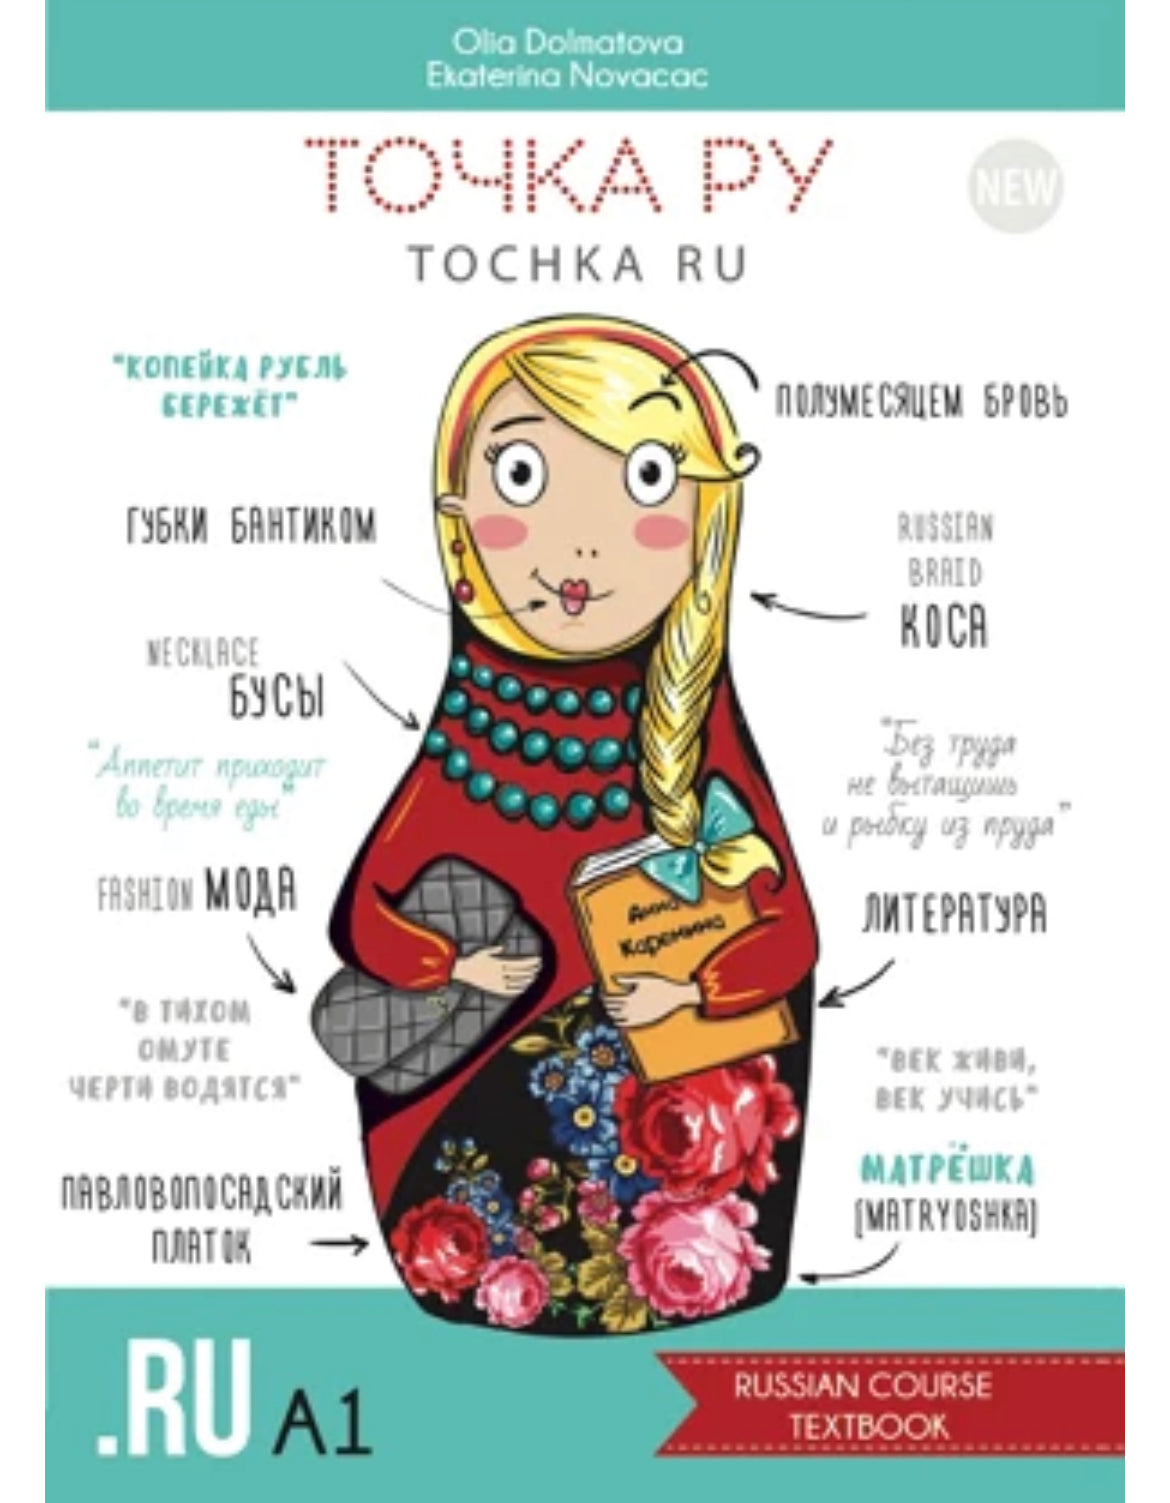 Tochka Ru Russian Course: Complete set A1 (PDF)